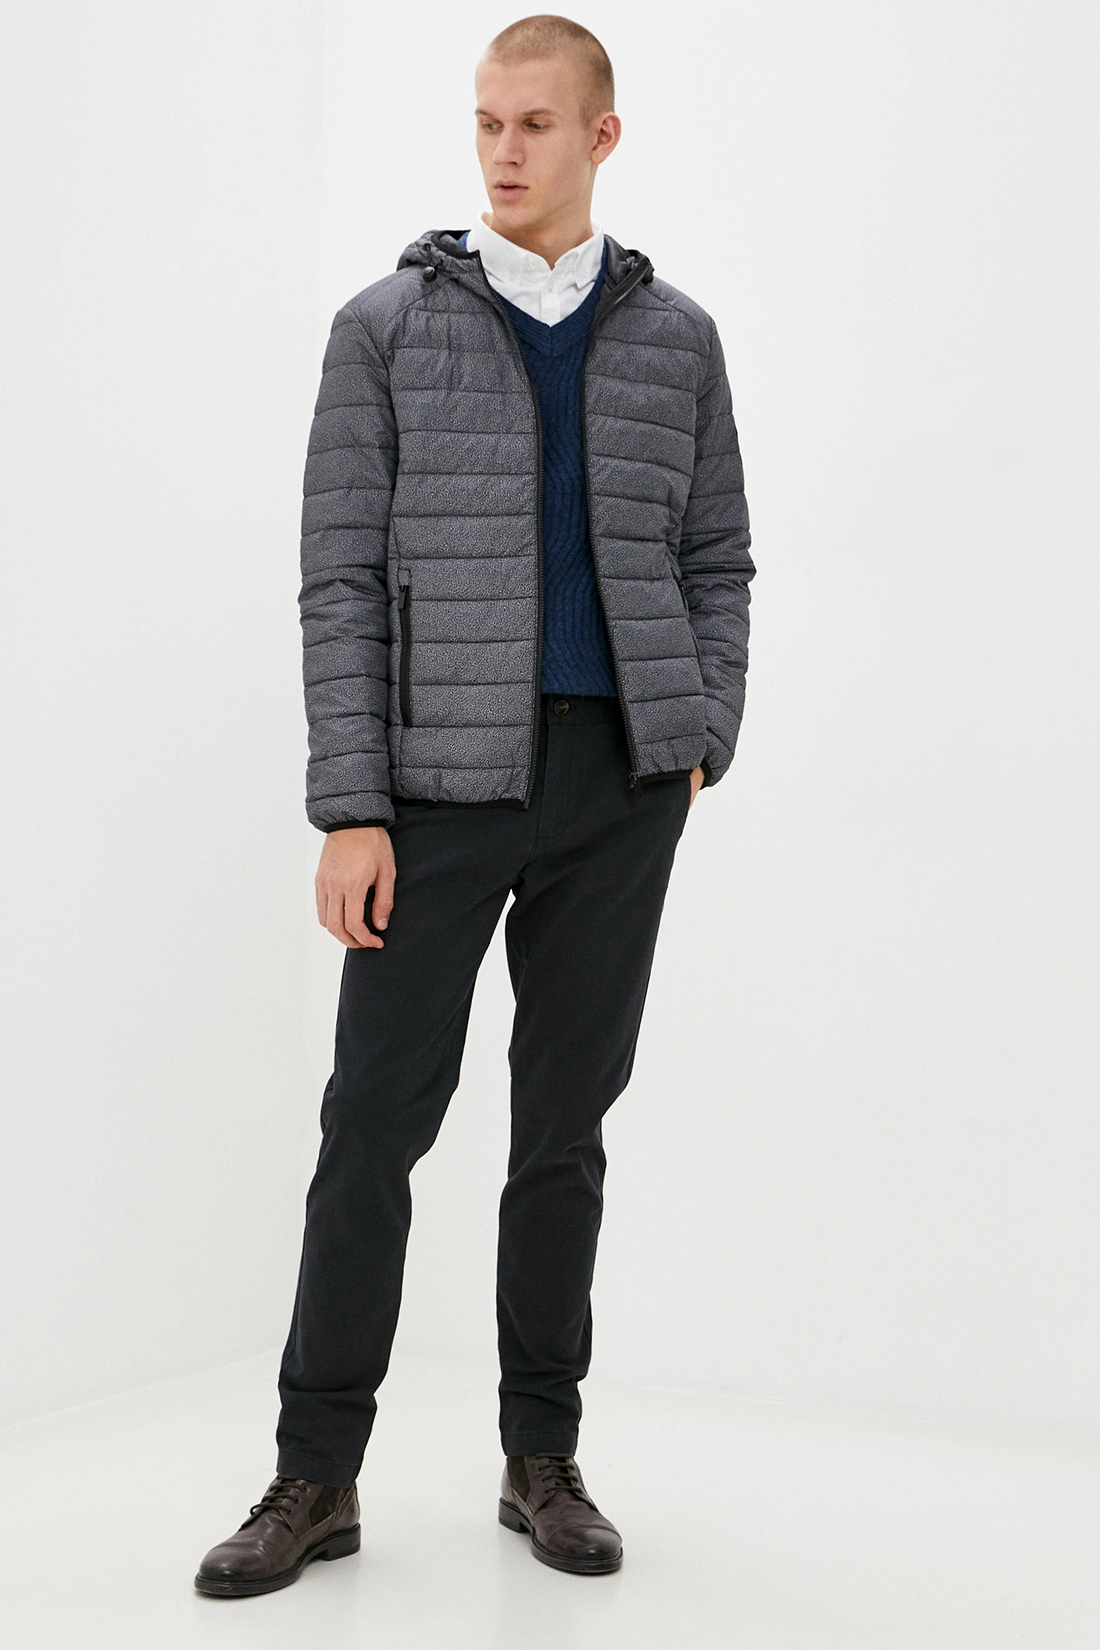 Куртка (Эко пух) (арт. baon B540519), размер M, цвет asphalt printed#серый Куртка (Эко пух) (арт. baon B540519) - фото 5